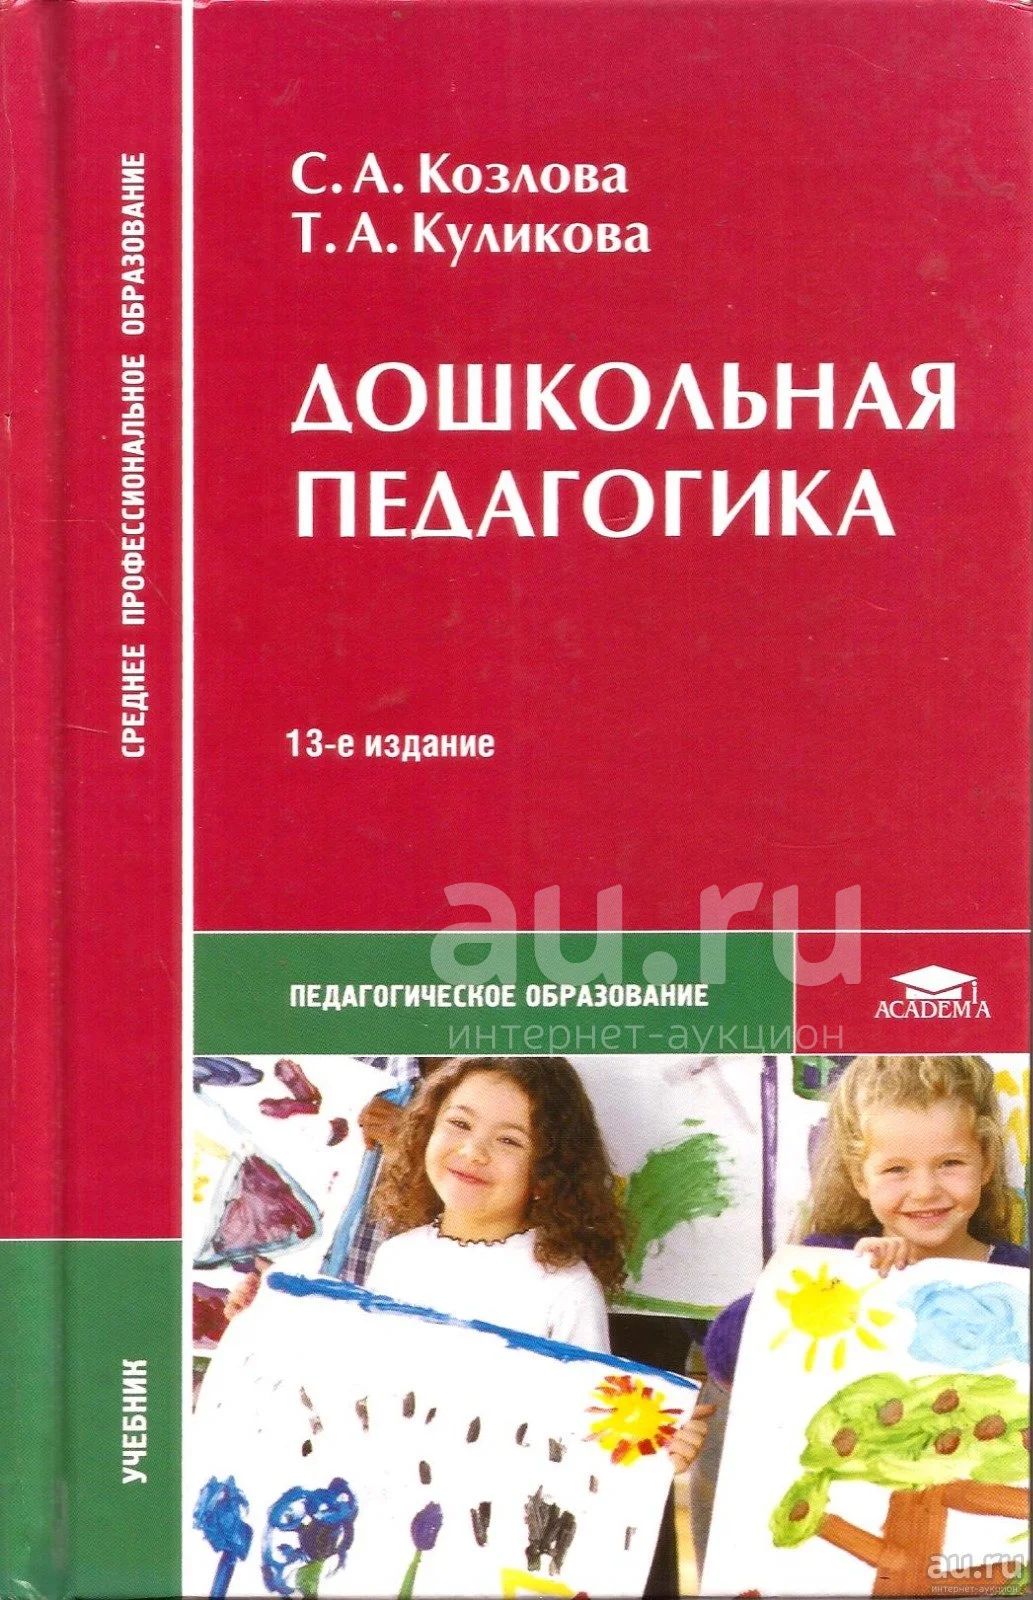 Обучение и воспитание учебники